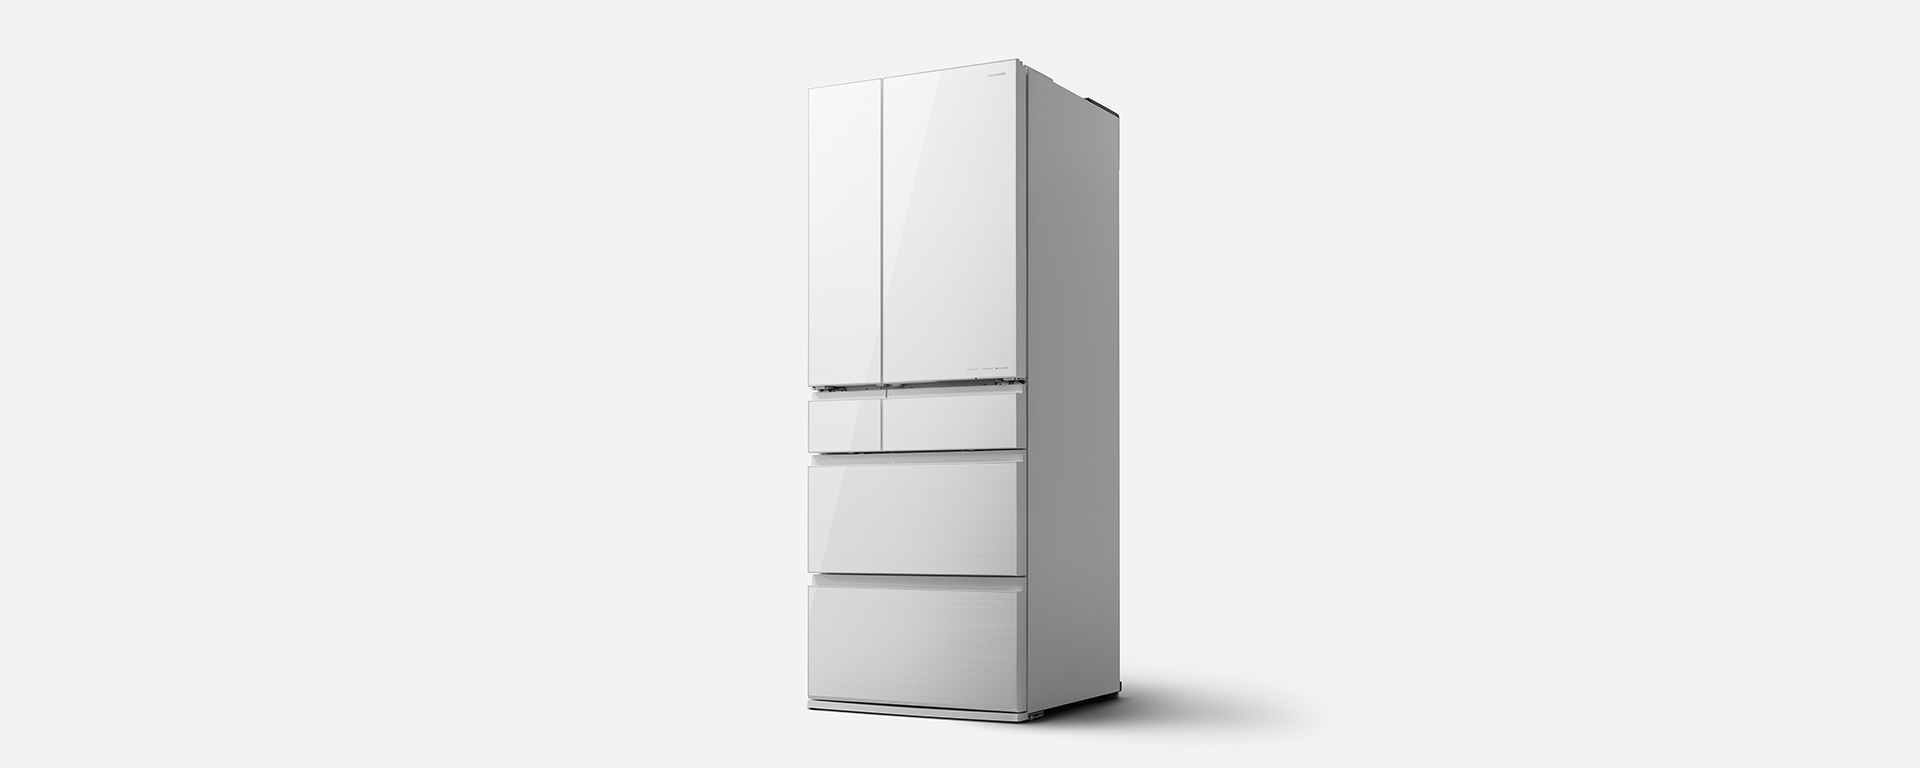 概要 冷凍冷蔵庫 NR-F60HX1 | 冷蔵庫 | Panasonic